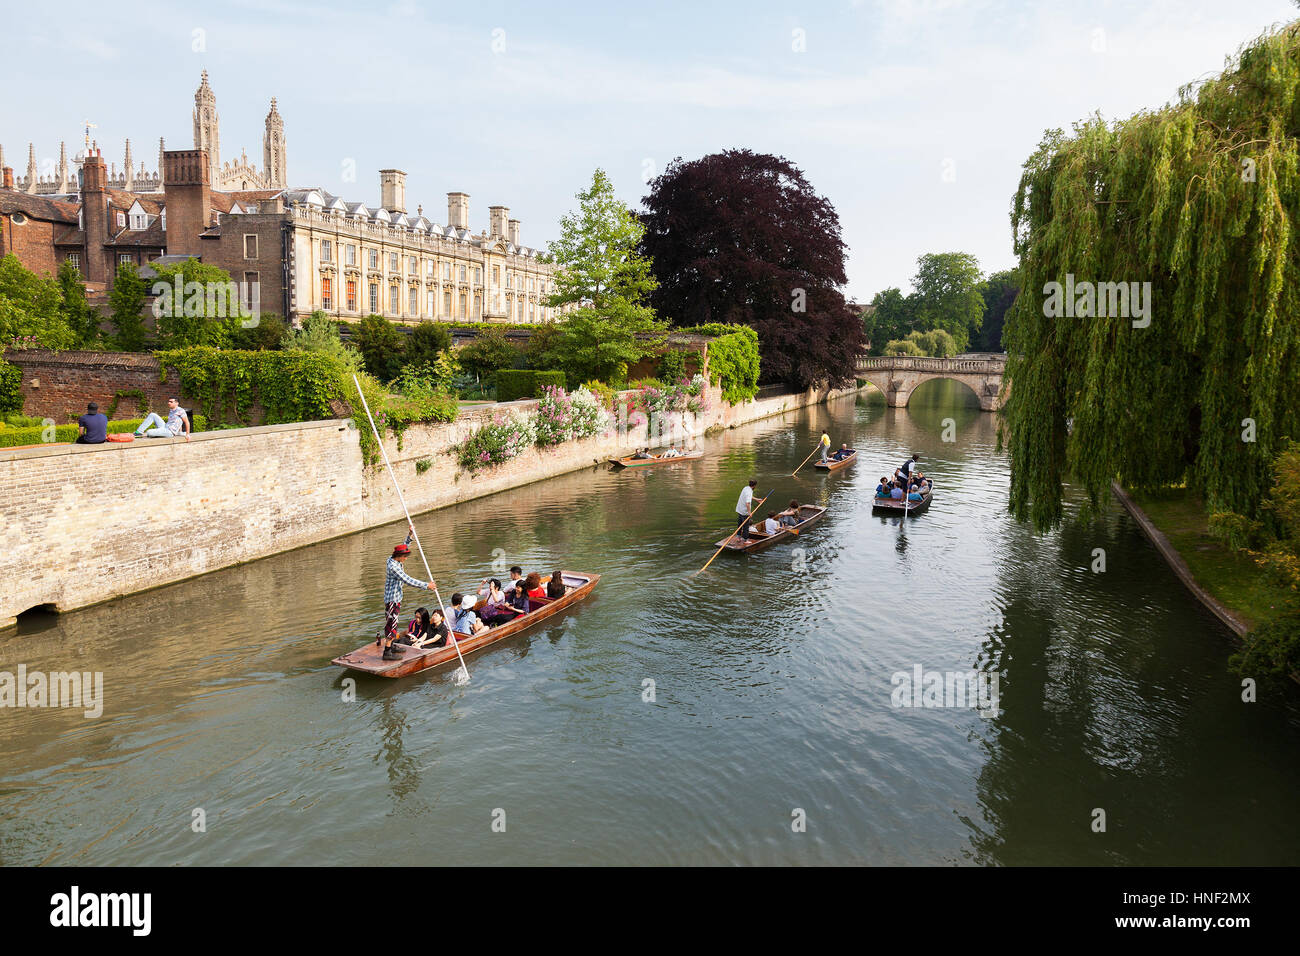 CAMBRIDGE, UK - 12 juin 2015 : Les gens de plates sur la rivière Cam avec Clare College et Clare Bridge en arrière-plan Banque D'Images